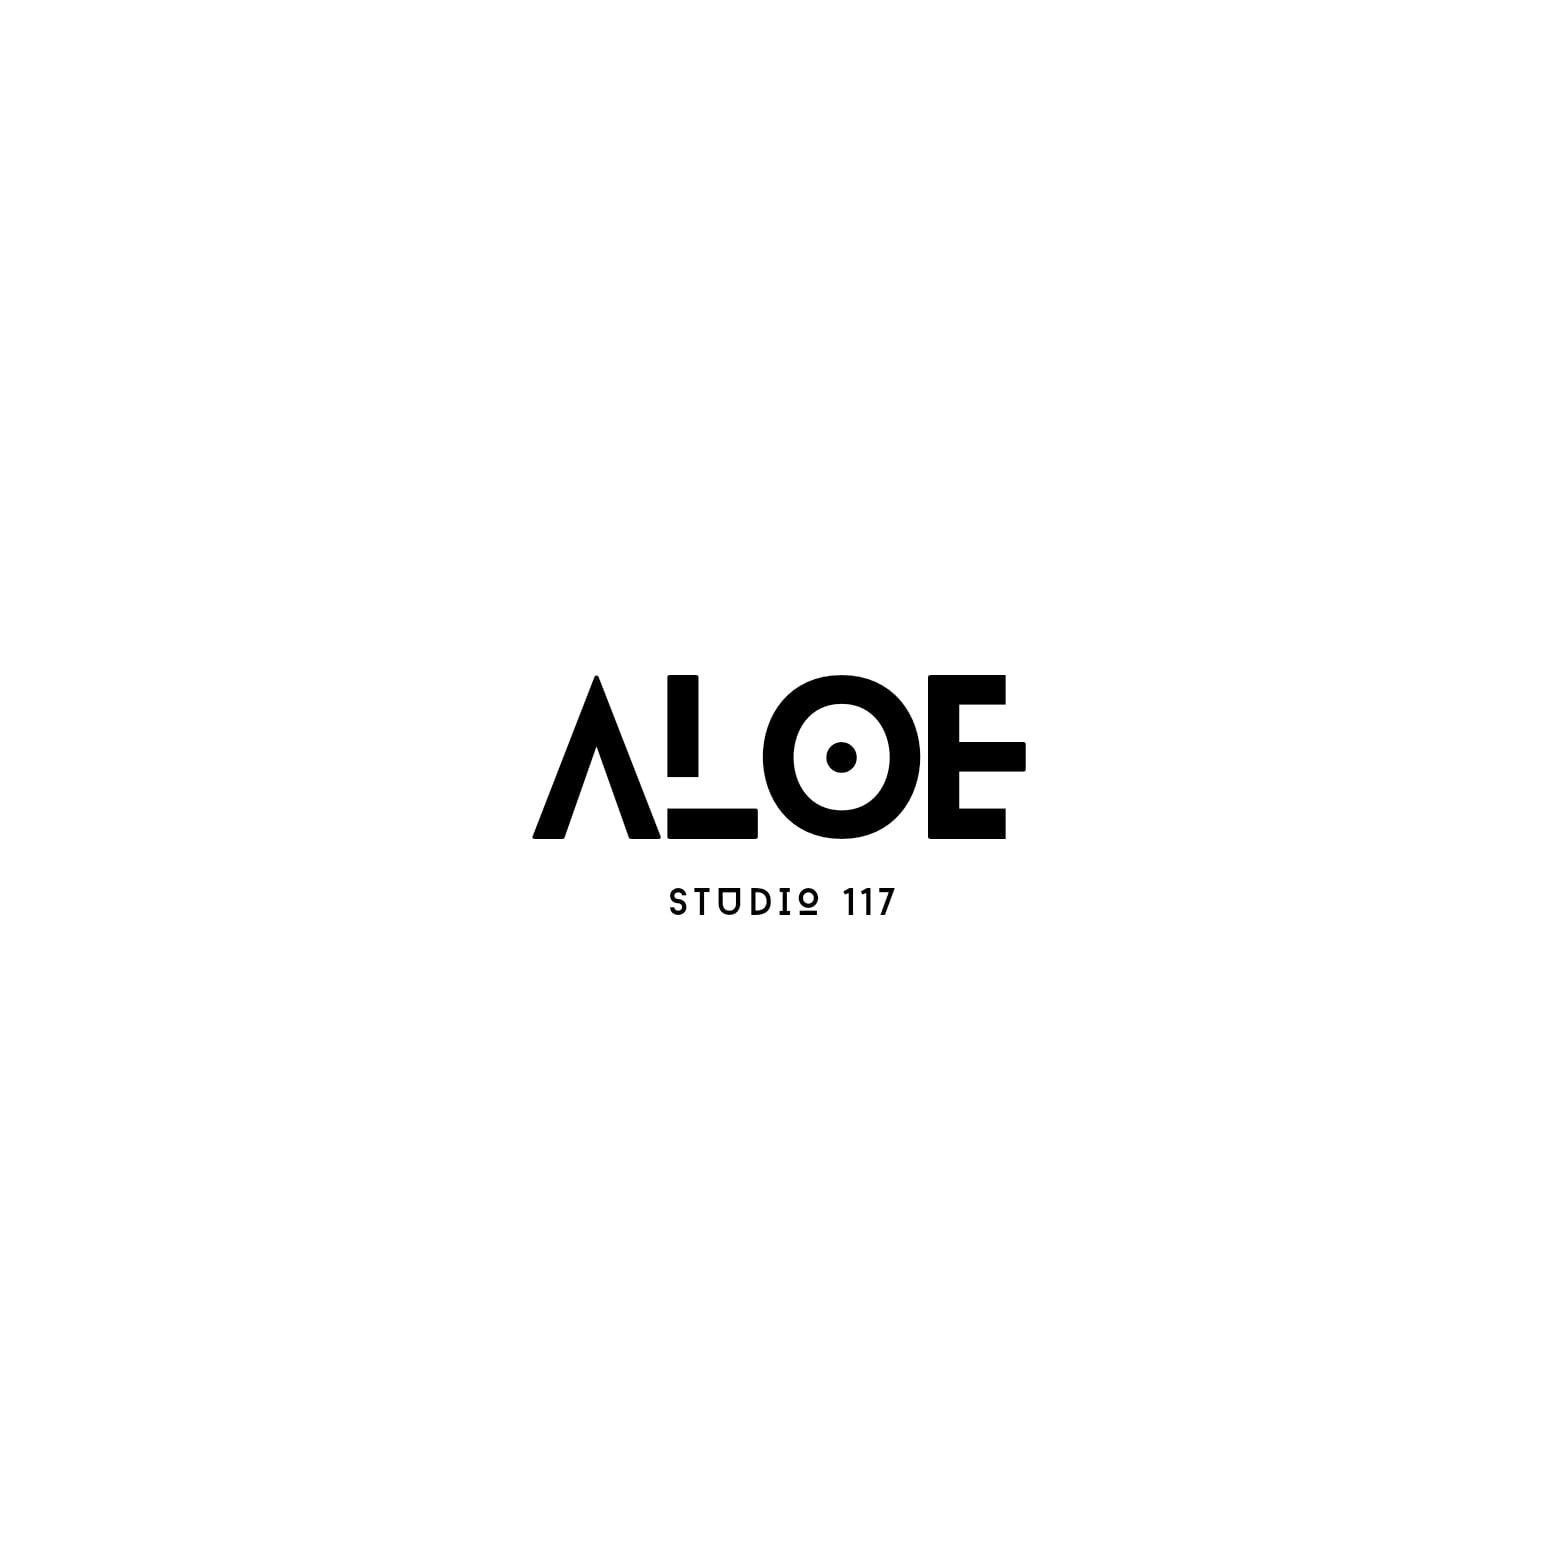 Aloe Studio 117, Phenix Salon Suites No. 1 Deansgate, Manchester M3 1AZ, Suite 117, M3 1AZ, Manchester